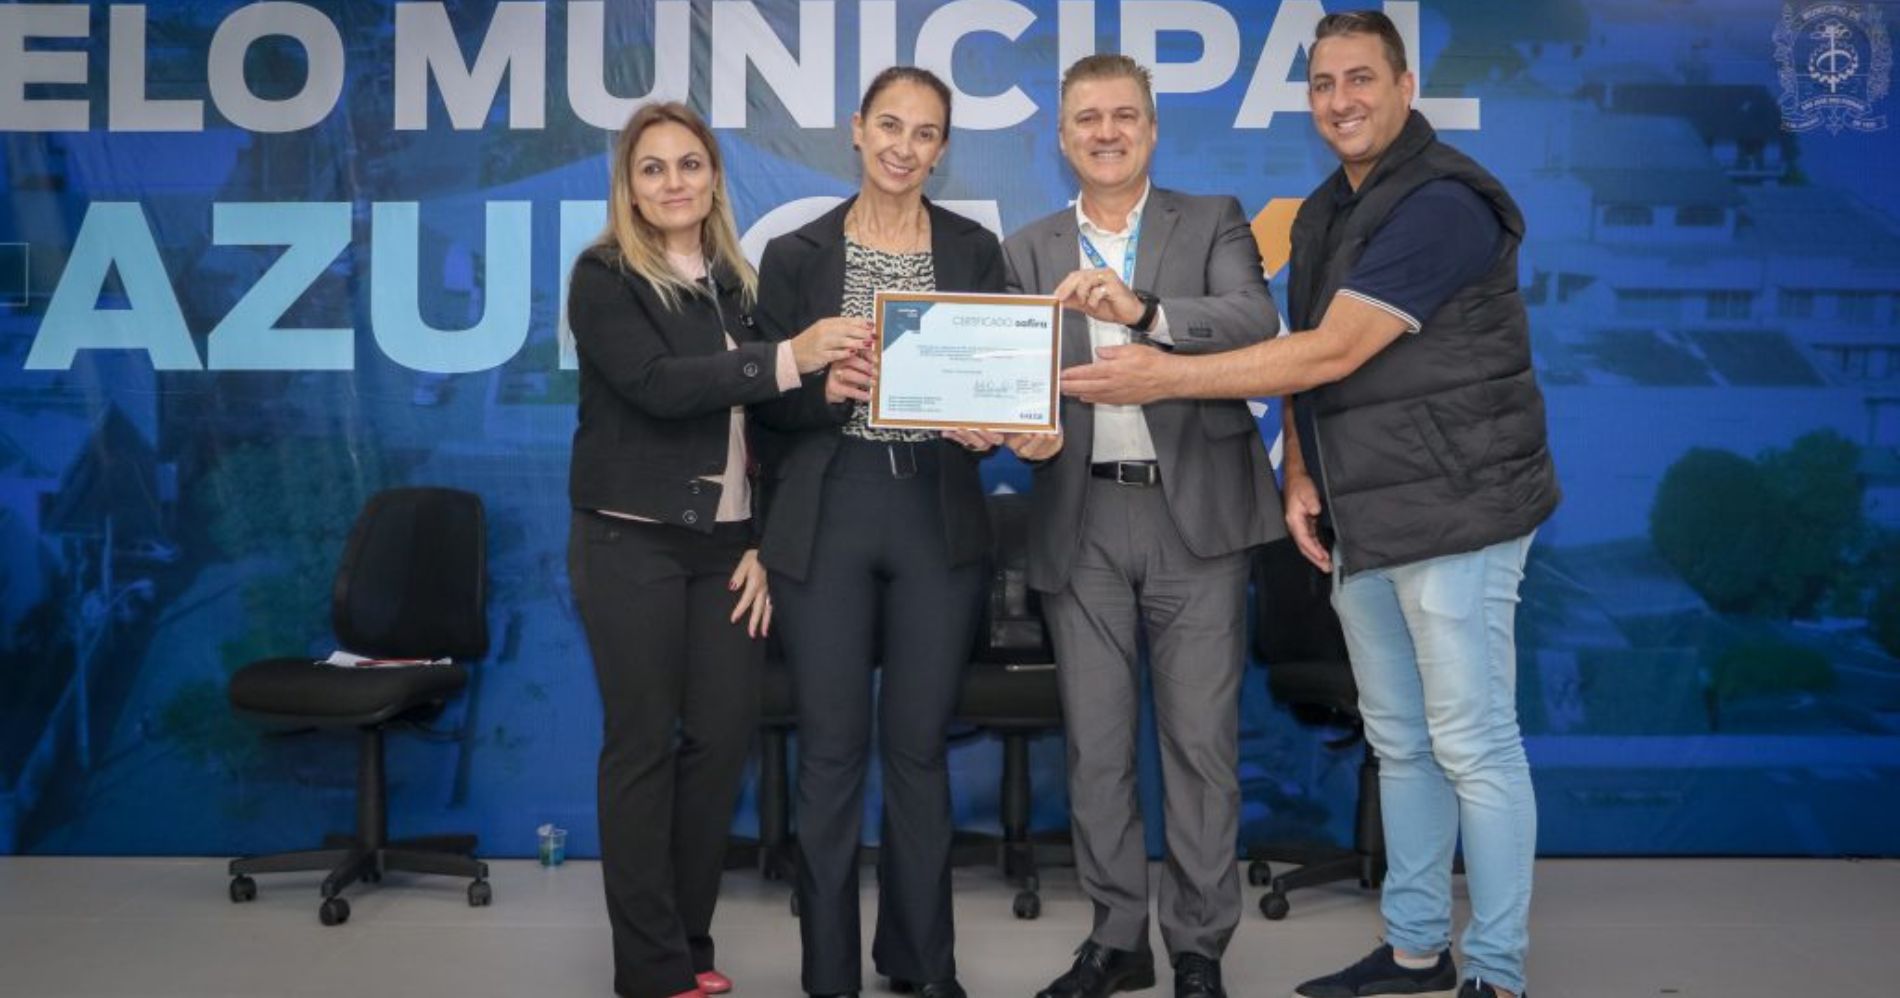 São José dos Pinhais é premiada com o Selo Município + Azul Caixa por suas boas práticas de governança e responsabilidade socioambiental